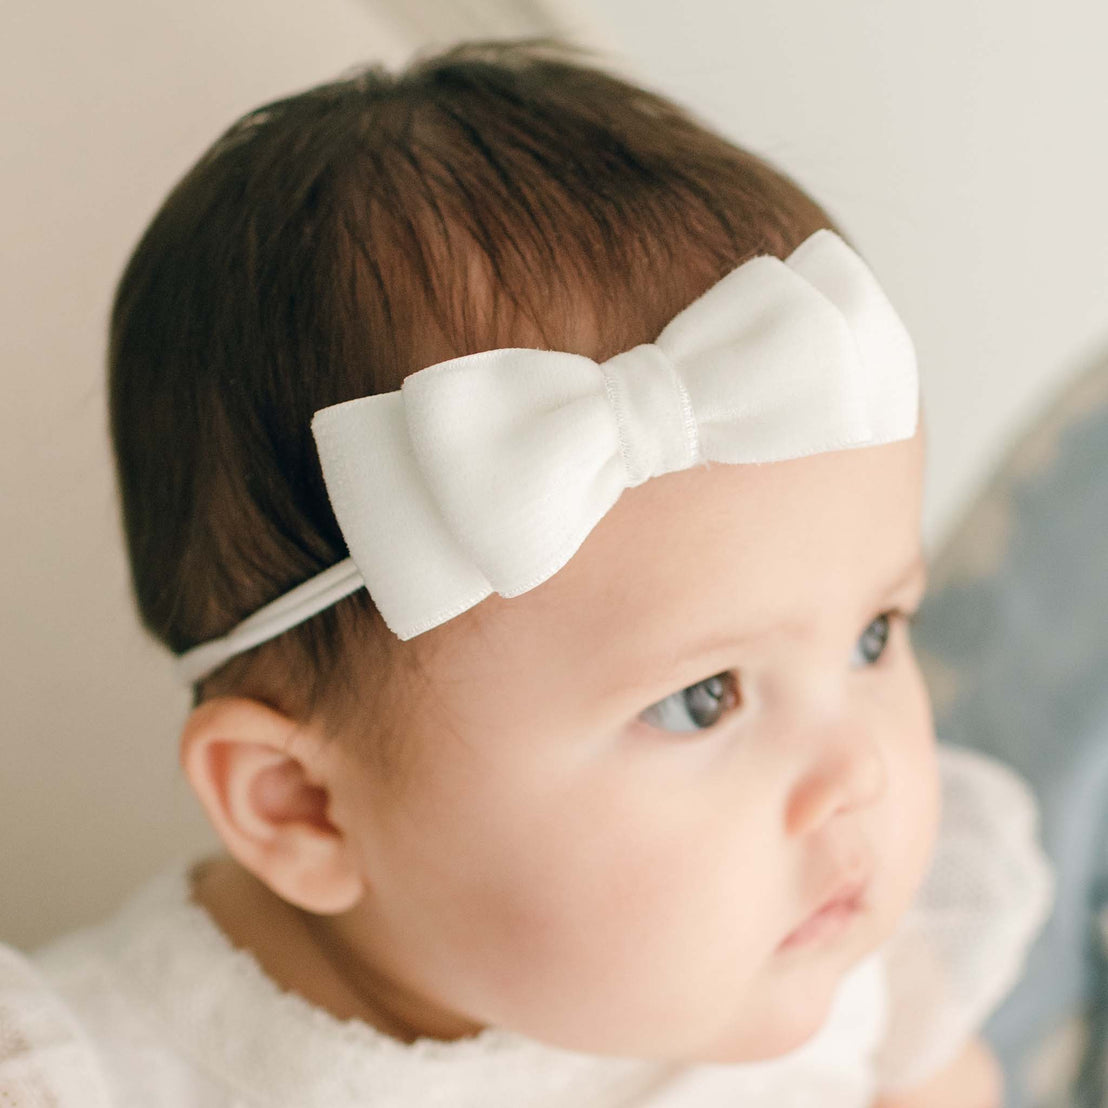 Baby Girl wearing the Ella bow headband made of velvet